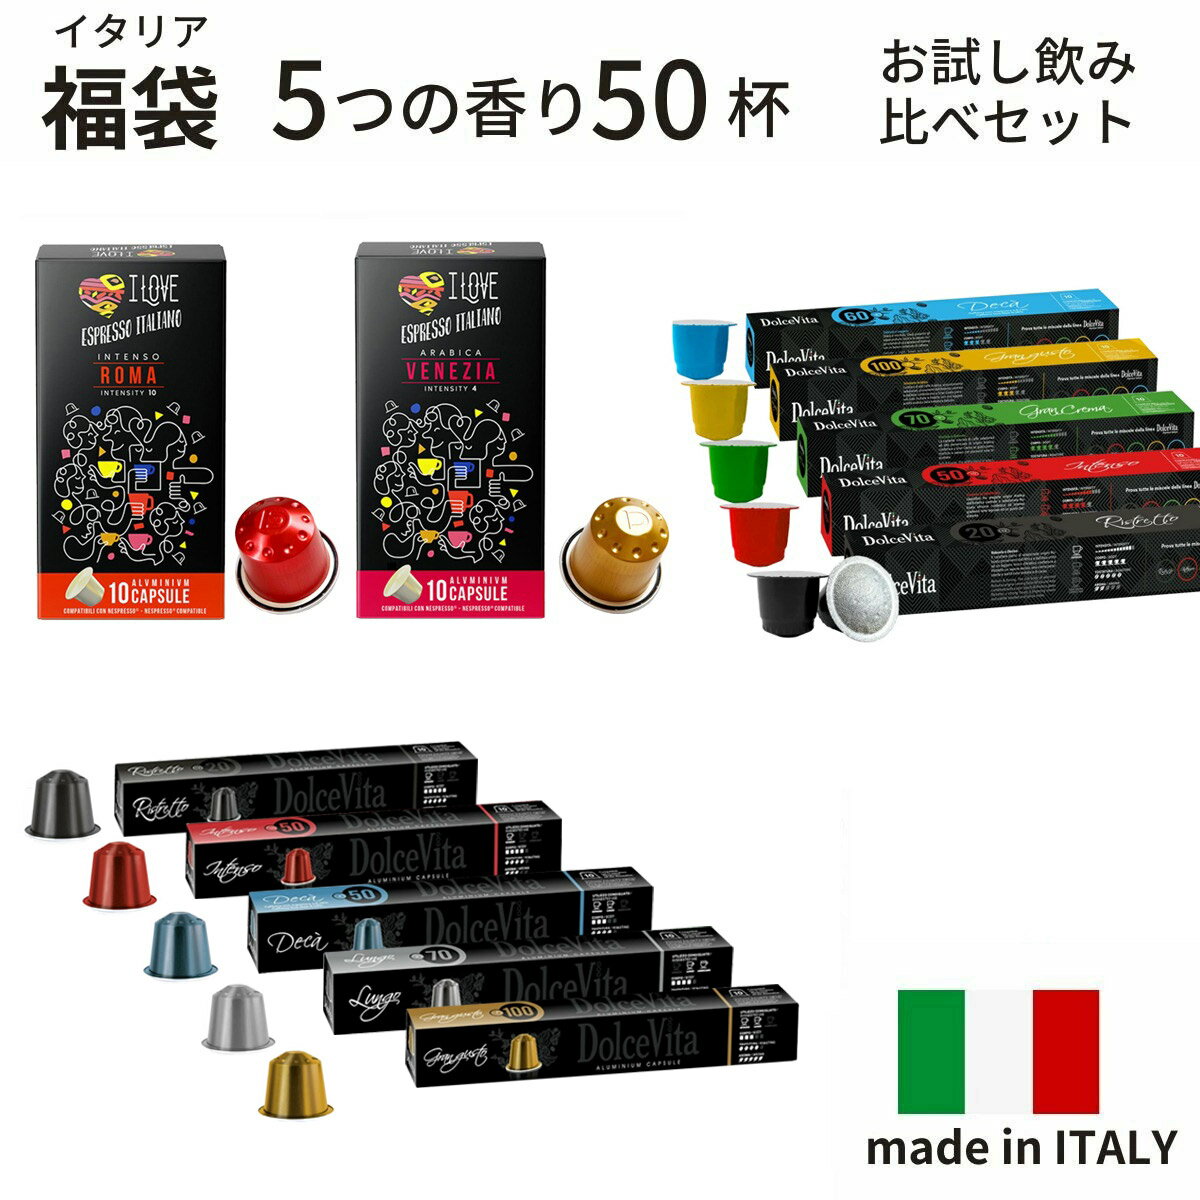 福袋 イタリア製 ネスプレッソ 互換 カプセル コーヒー お試し 5種 50杯分 互換カプセル ネスプレッソカプセル 送料…